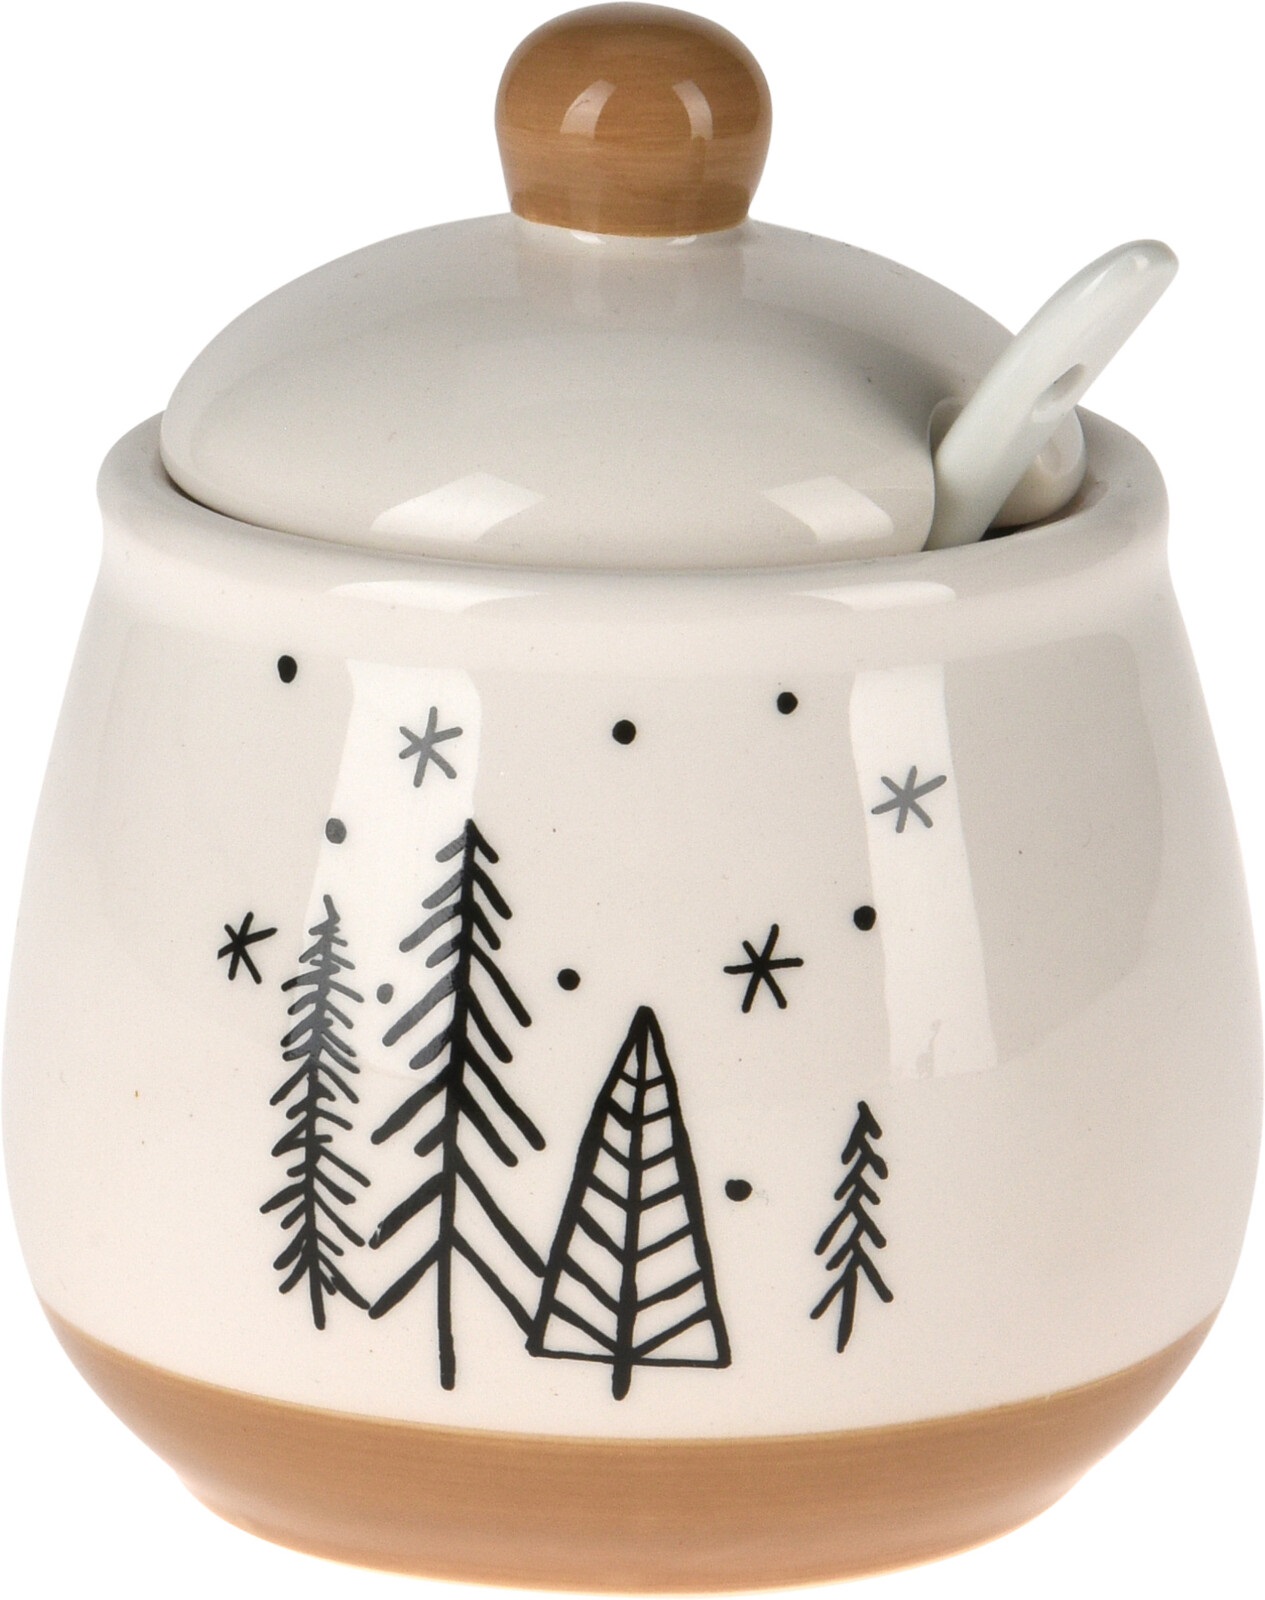 Afbeelding van Suikerpot 11cm met lepel keramiek creme/lichtbruin kerstboom assorti